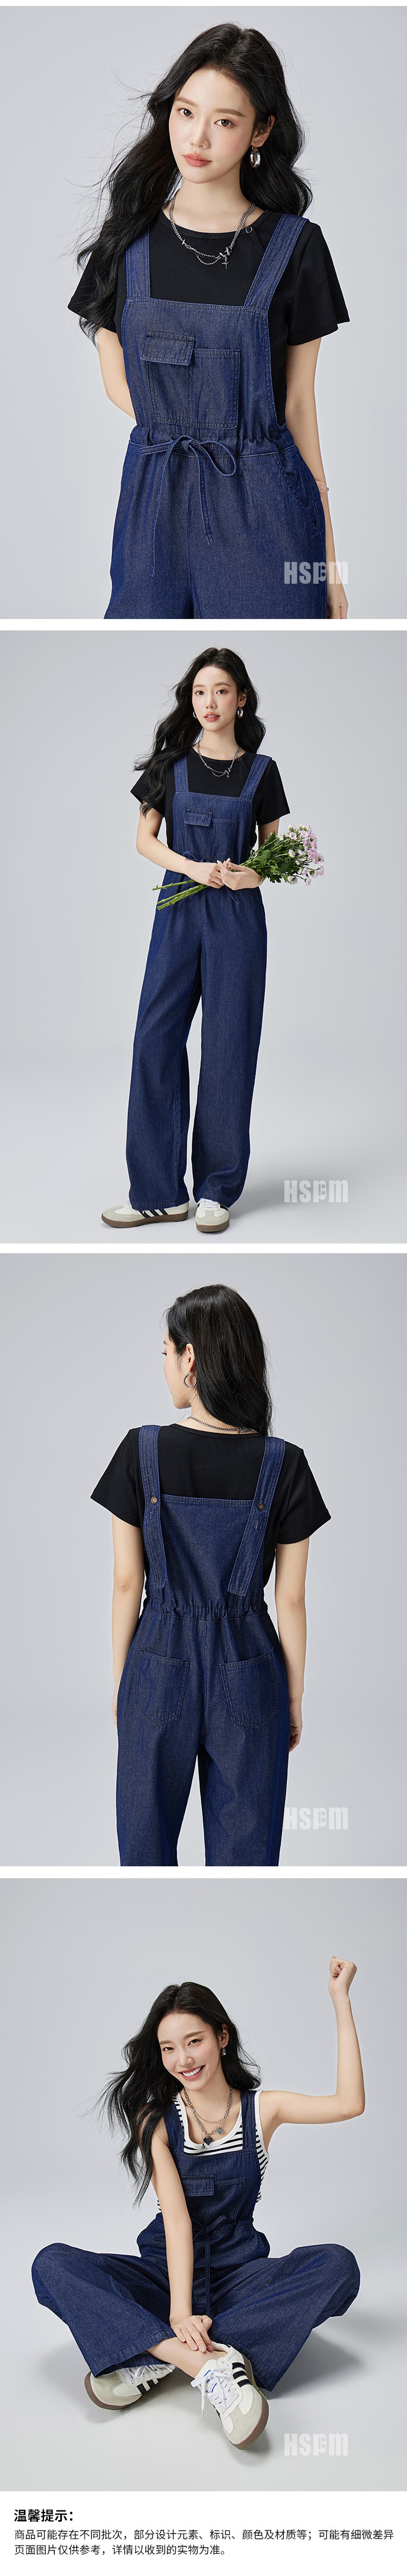 【中国直邮】HSPM 新款复古原色宽松休闲工装直筒裤子 深蓝色 S